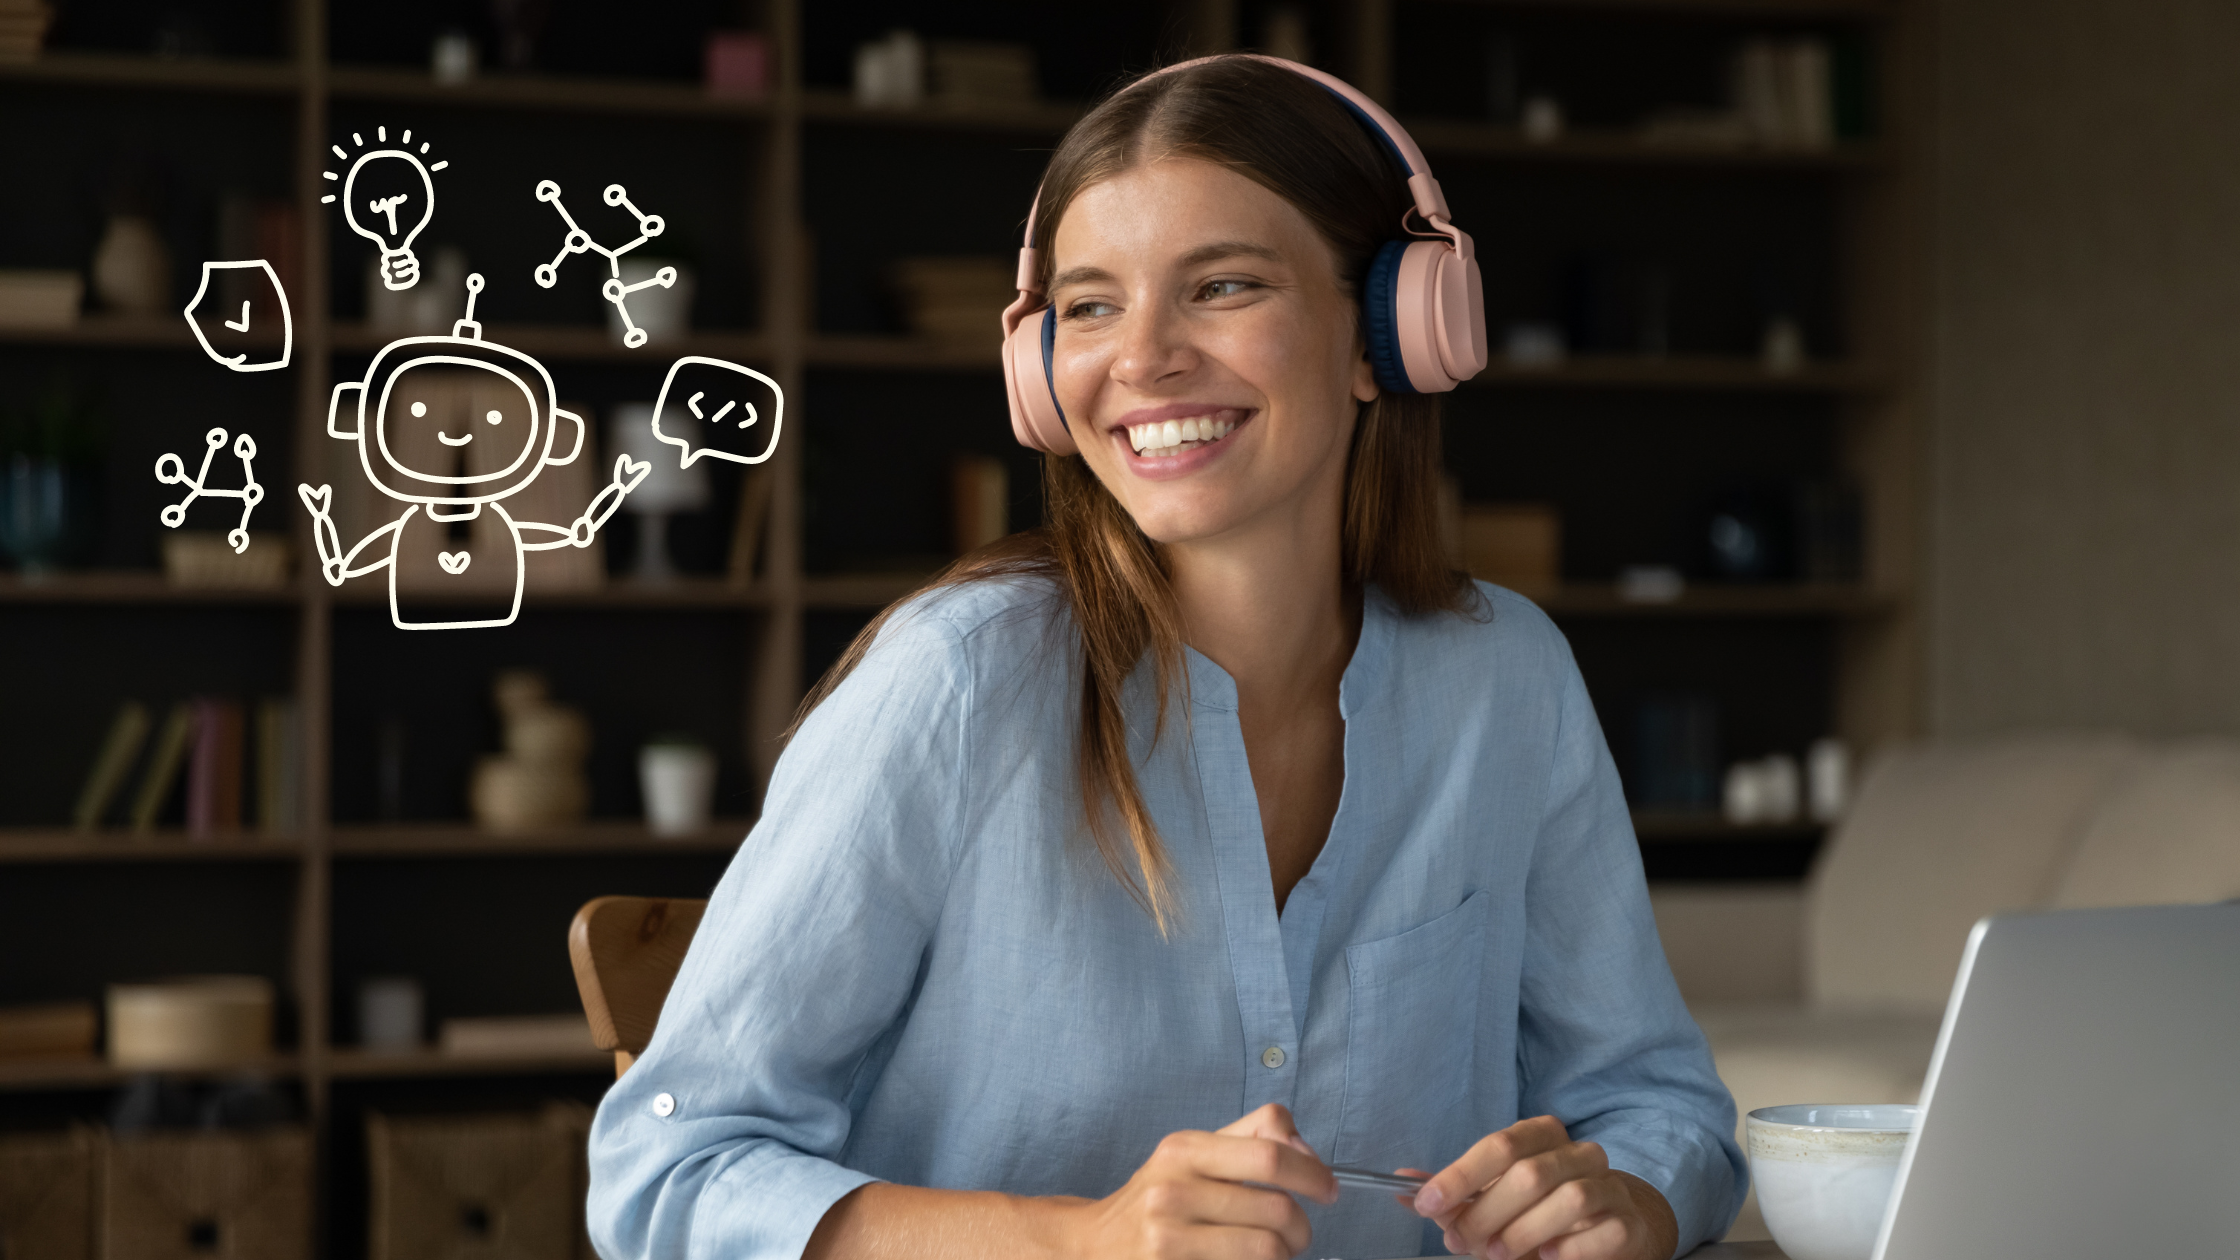 Frau mit rosa Kopfhörern auf dem Kopf, sitzt hinter einem Laptop und schaut lächelnd zur Seite auf einen grafischen kleinen Roboter, der mit unterschiedlichen Symbolen jongliert